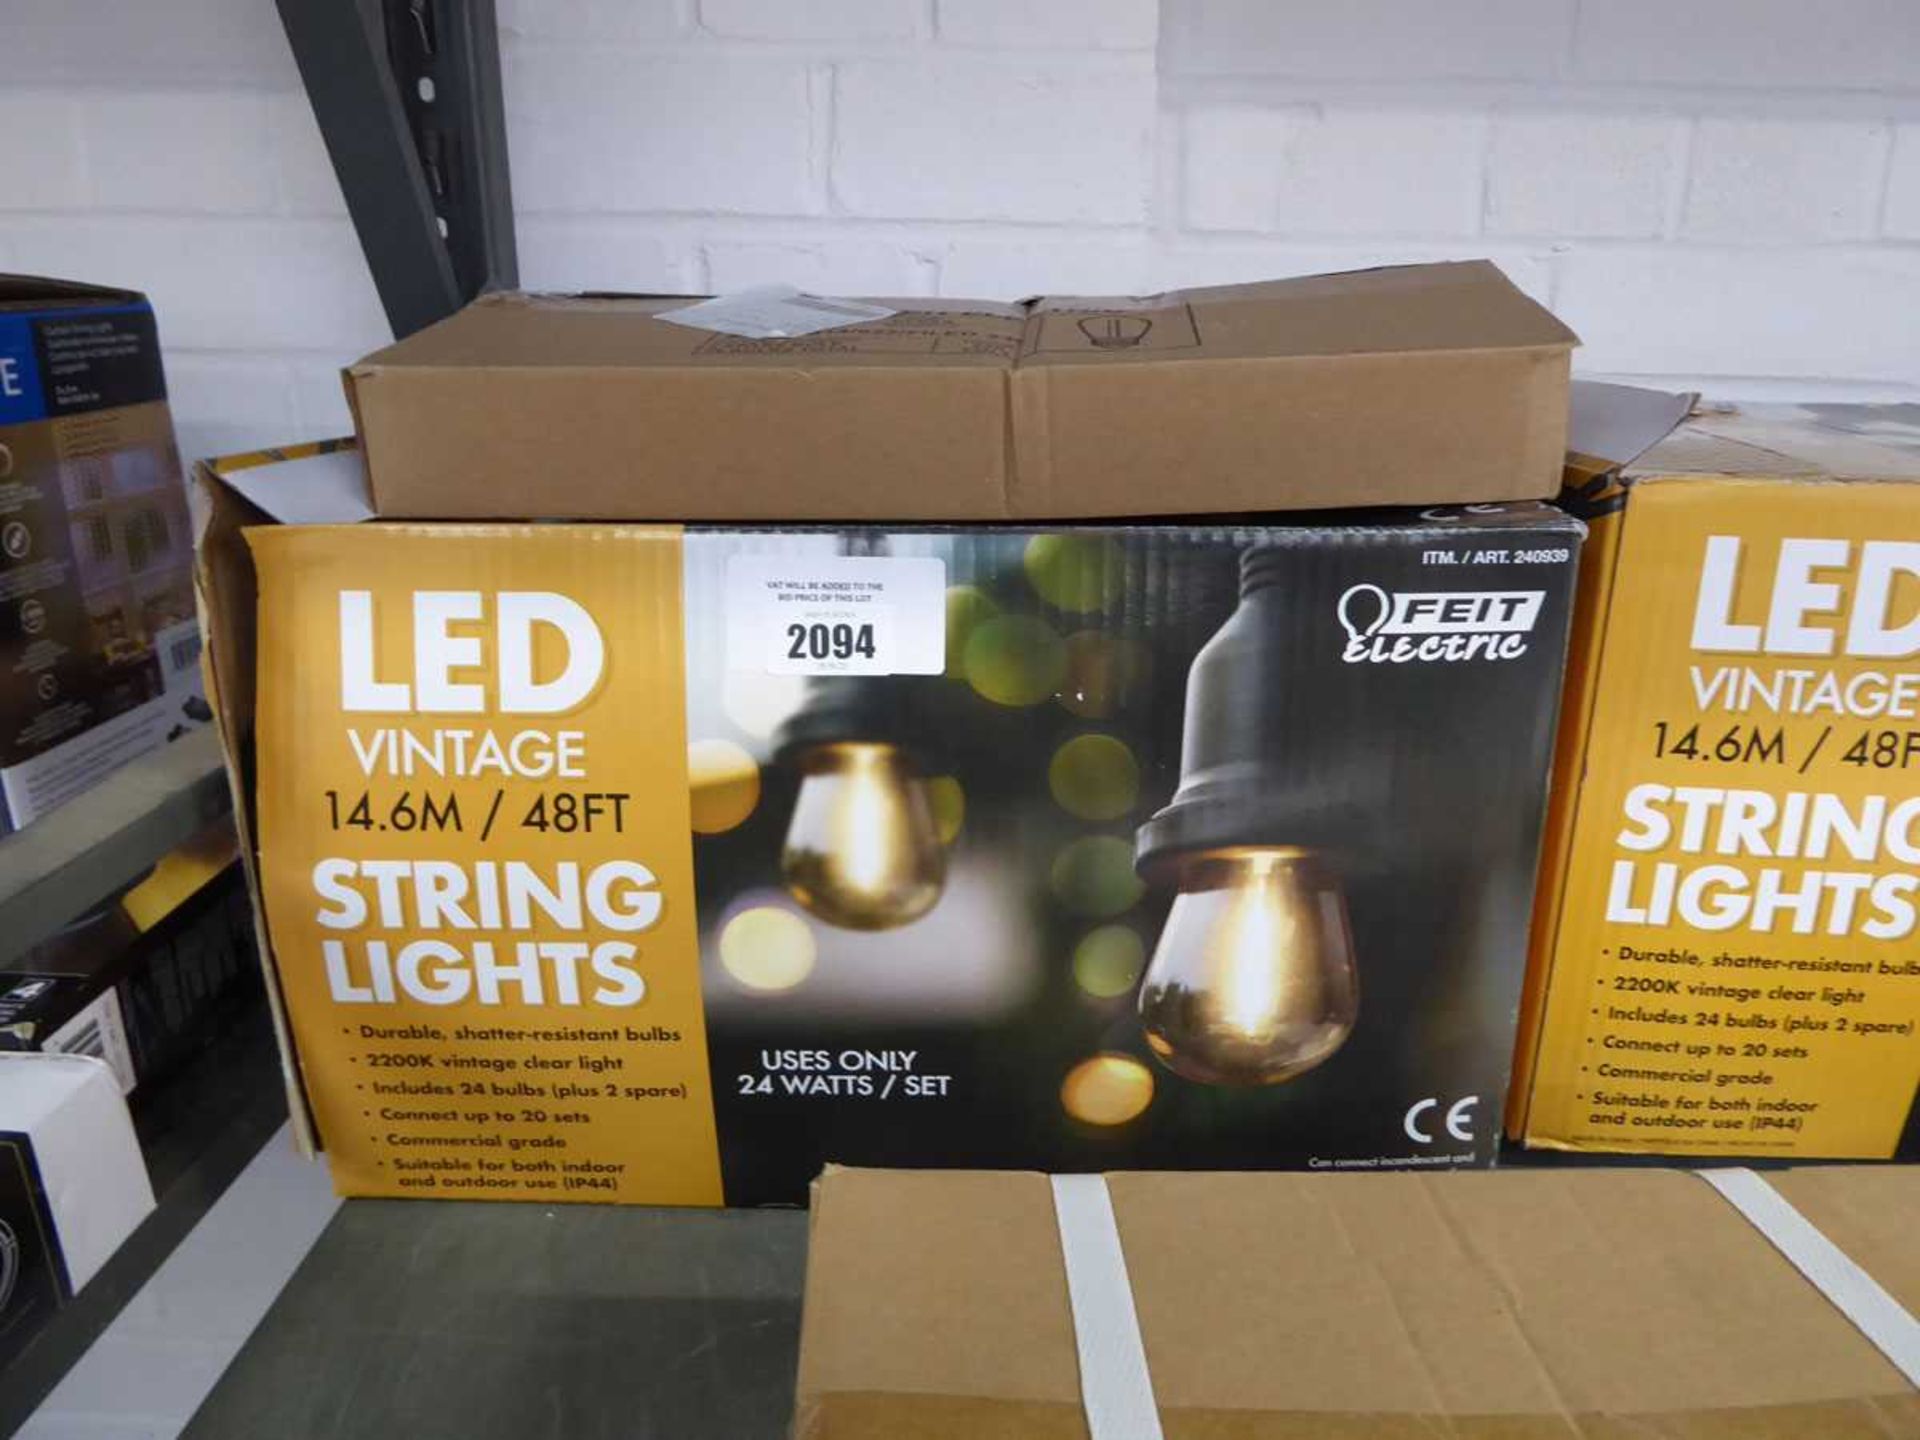 +VAT Boxed set of LED vintage garden string lights